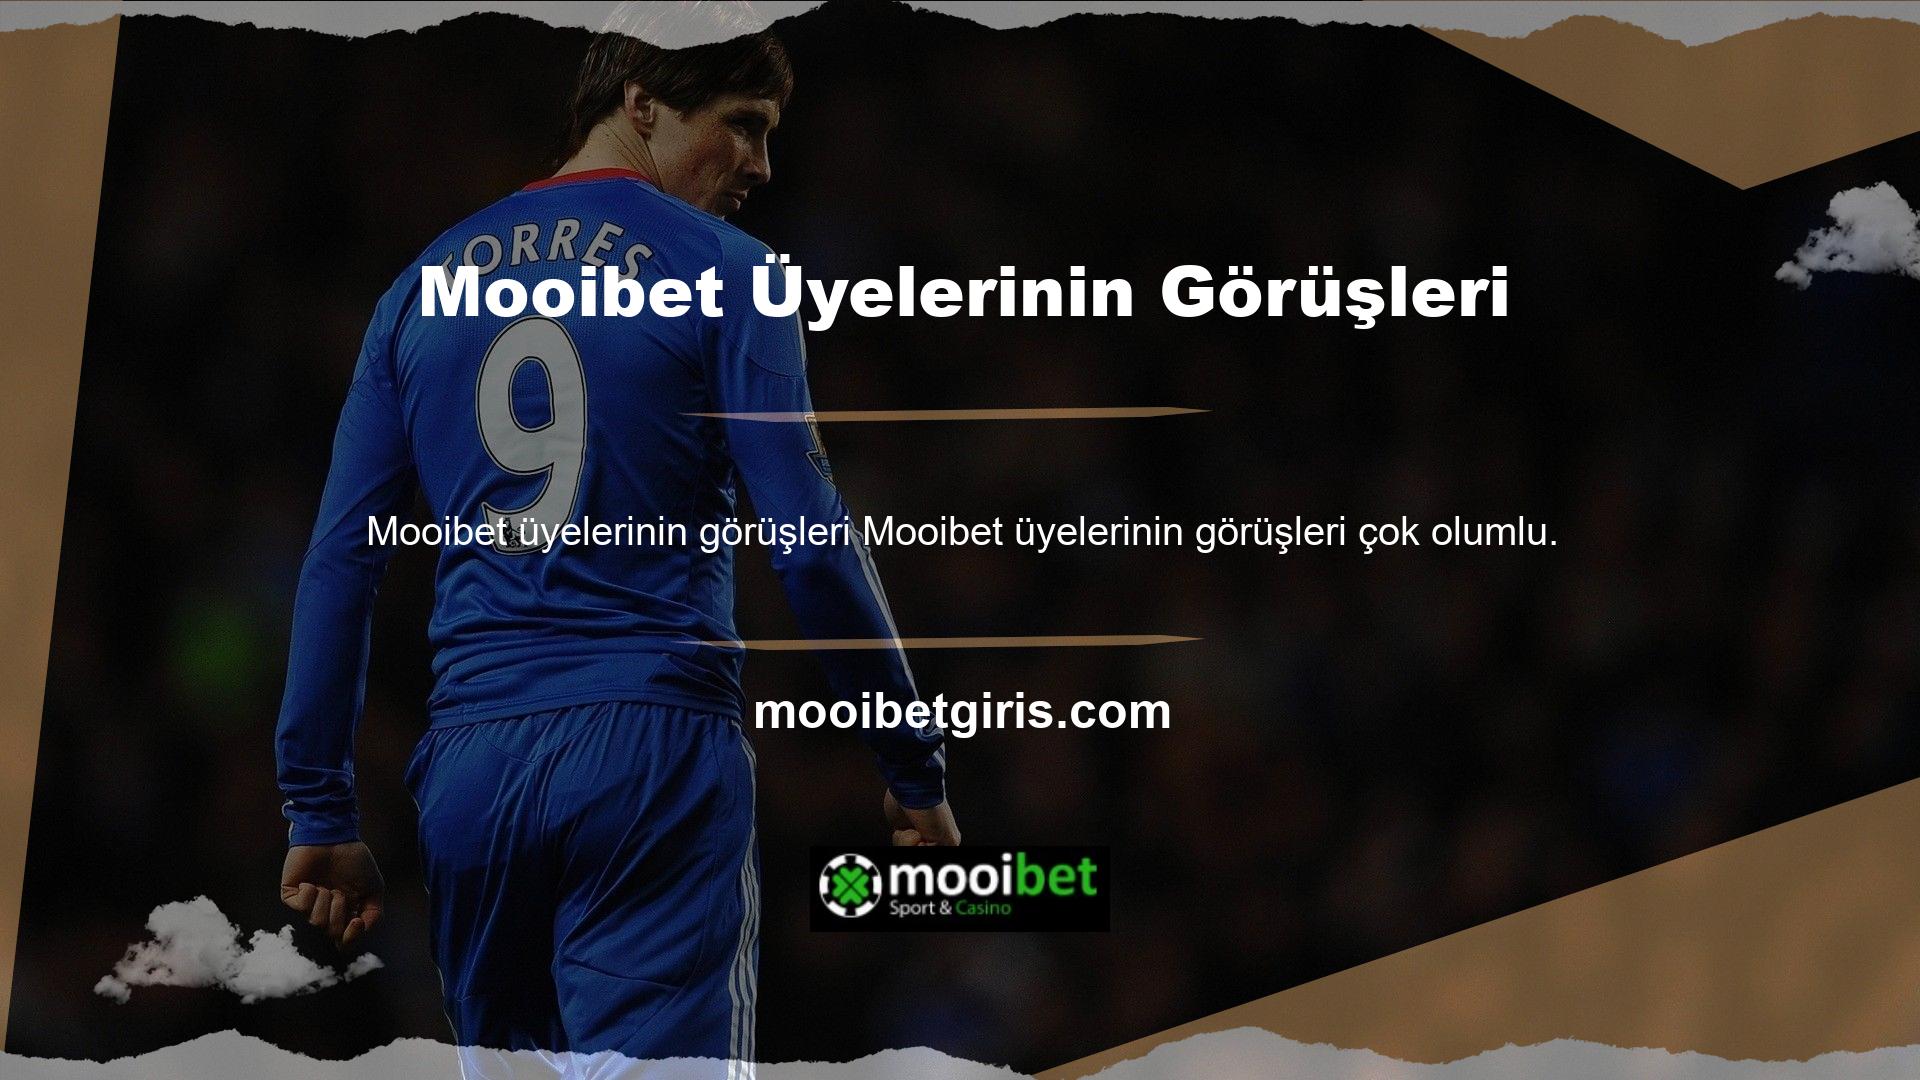 Kaliteli bir bahis sitesi olan Mooibet hakkında çok az kullanıcı olumsuz yorum yapmaktadır